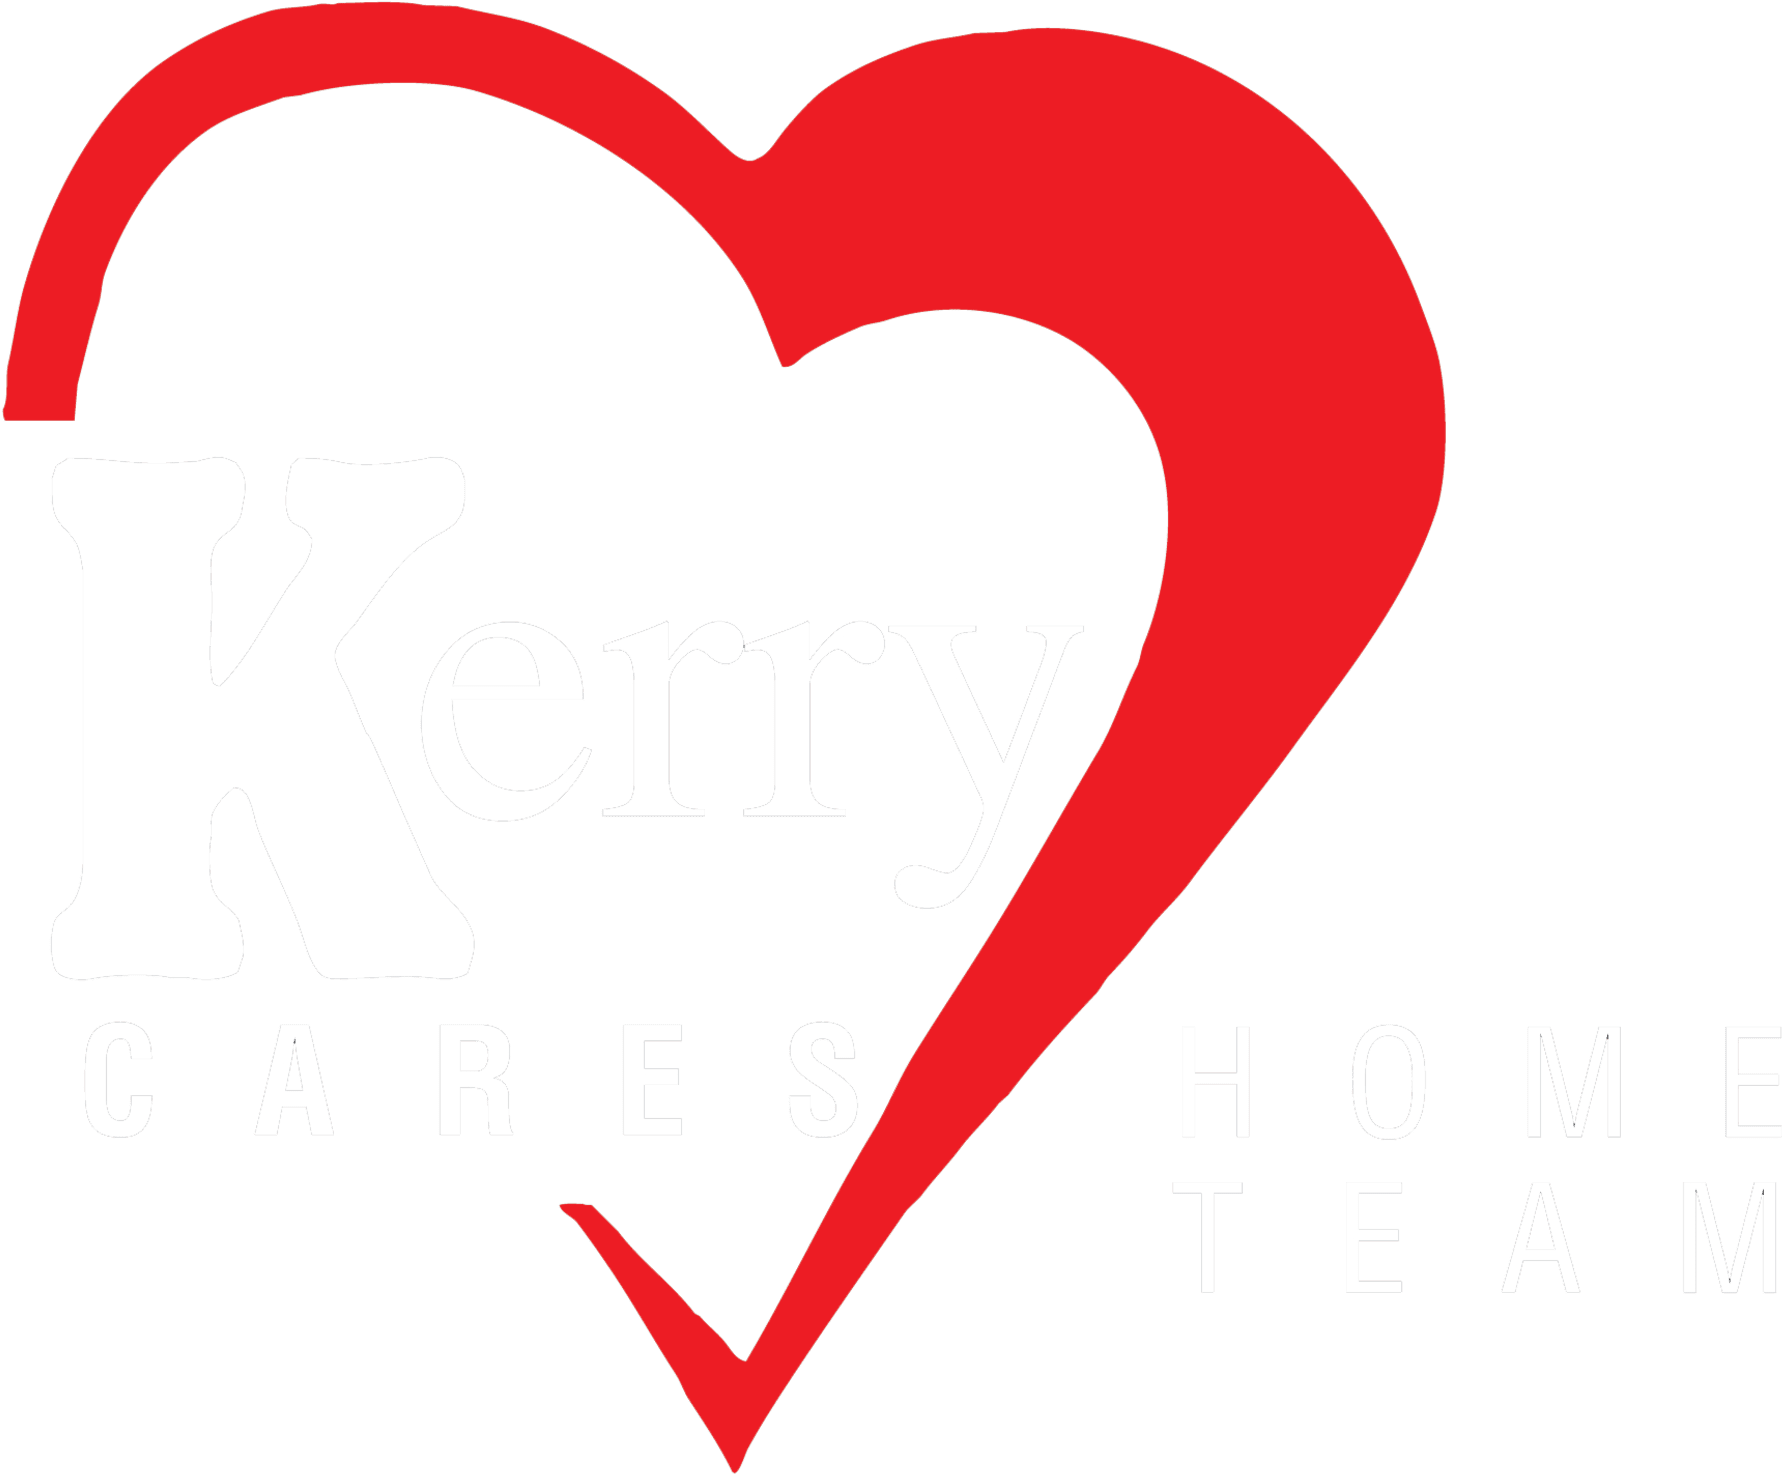 Kerry Cares Home Team - Kerry Cares Home Team (1803x1493)